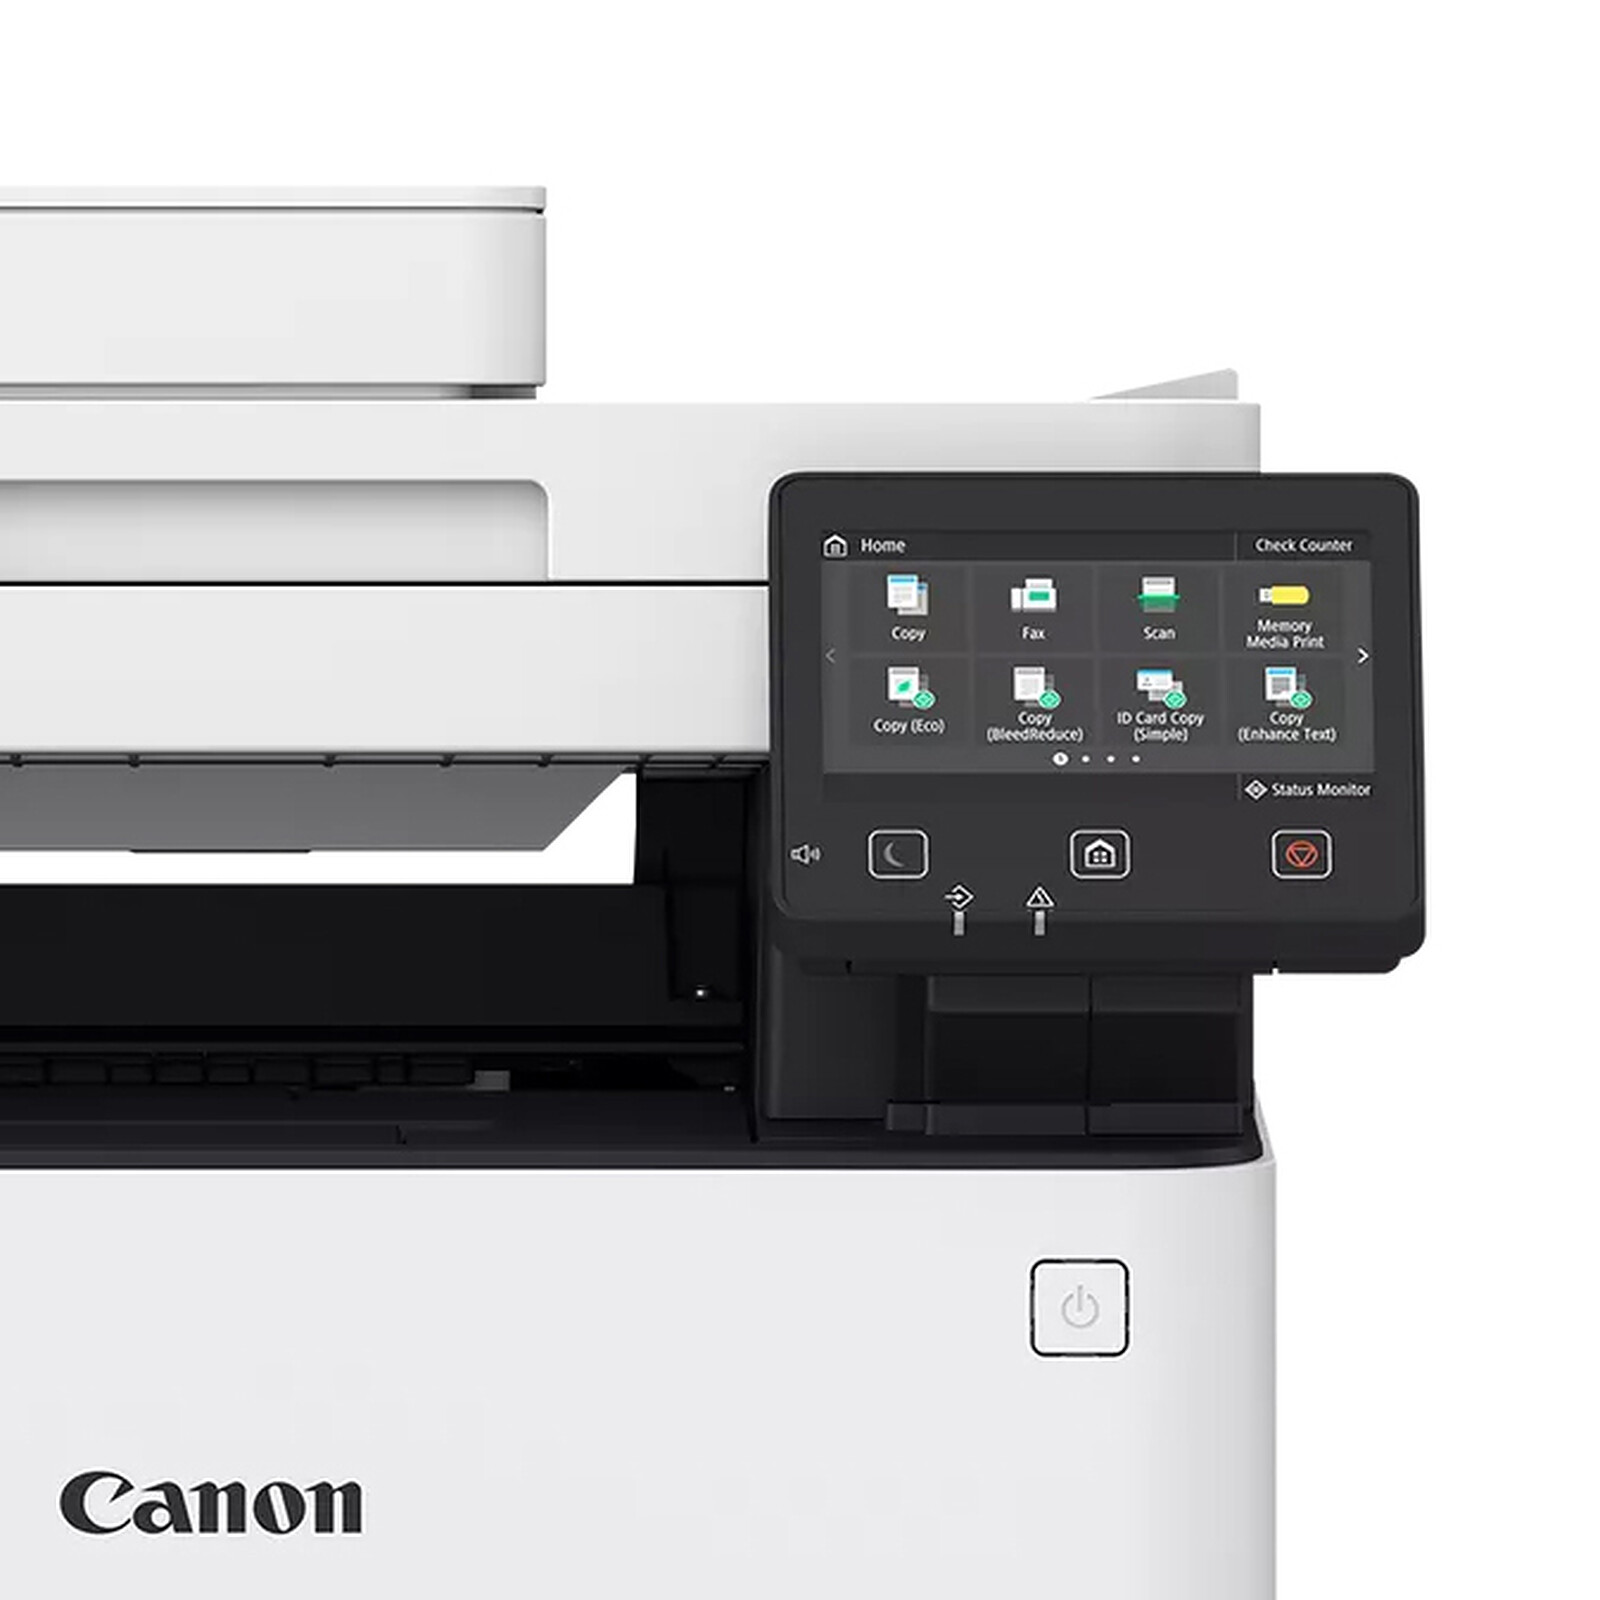 Canon i SENSYS MF655Cdw impresora multifunción láser color WiFi (3